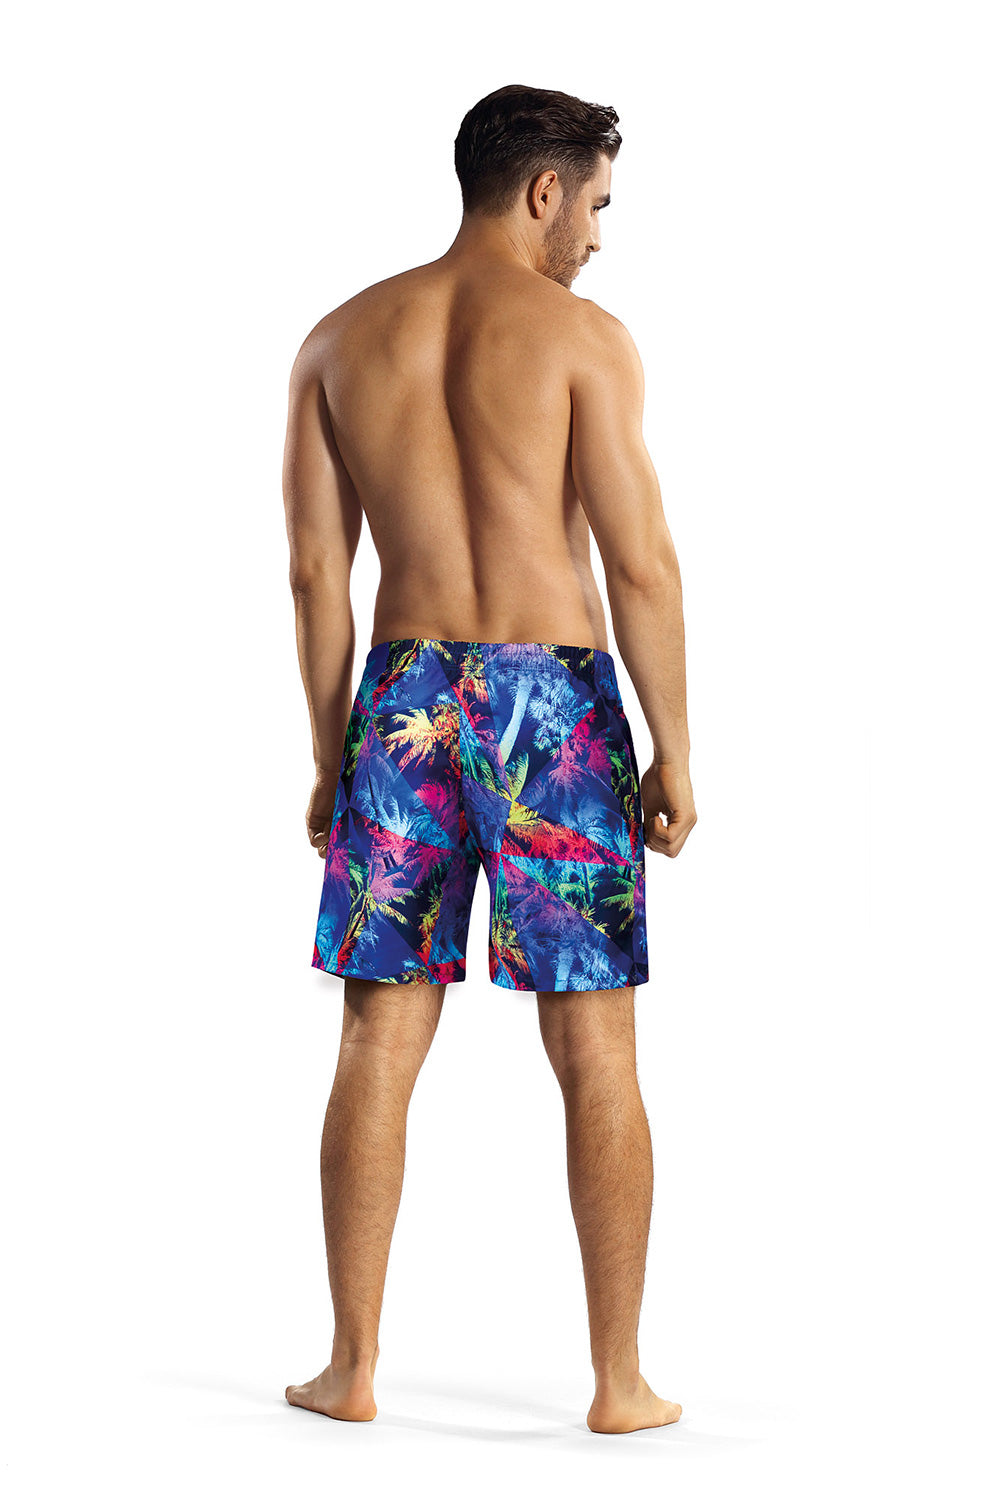 Swimming trunks model 182805 Elsy Style Boxers Shorts, Slips, Swimming Briefs for Men